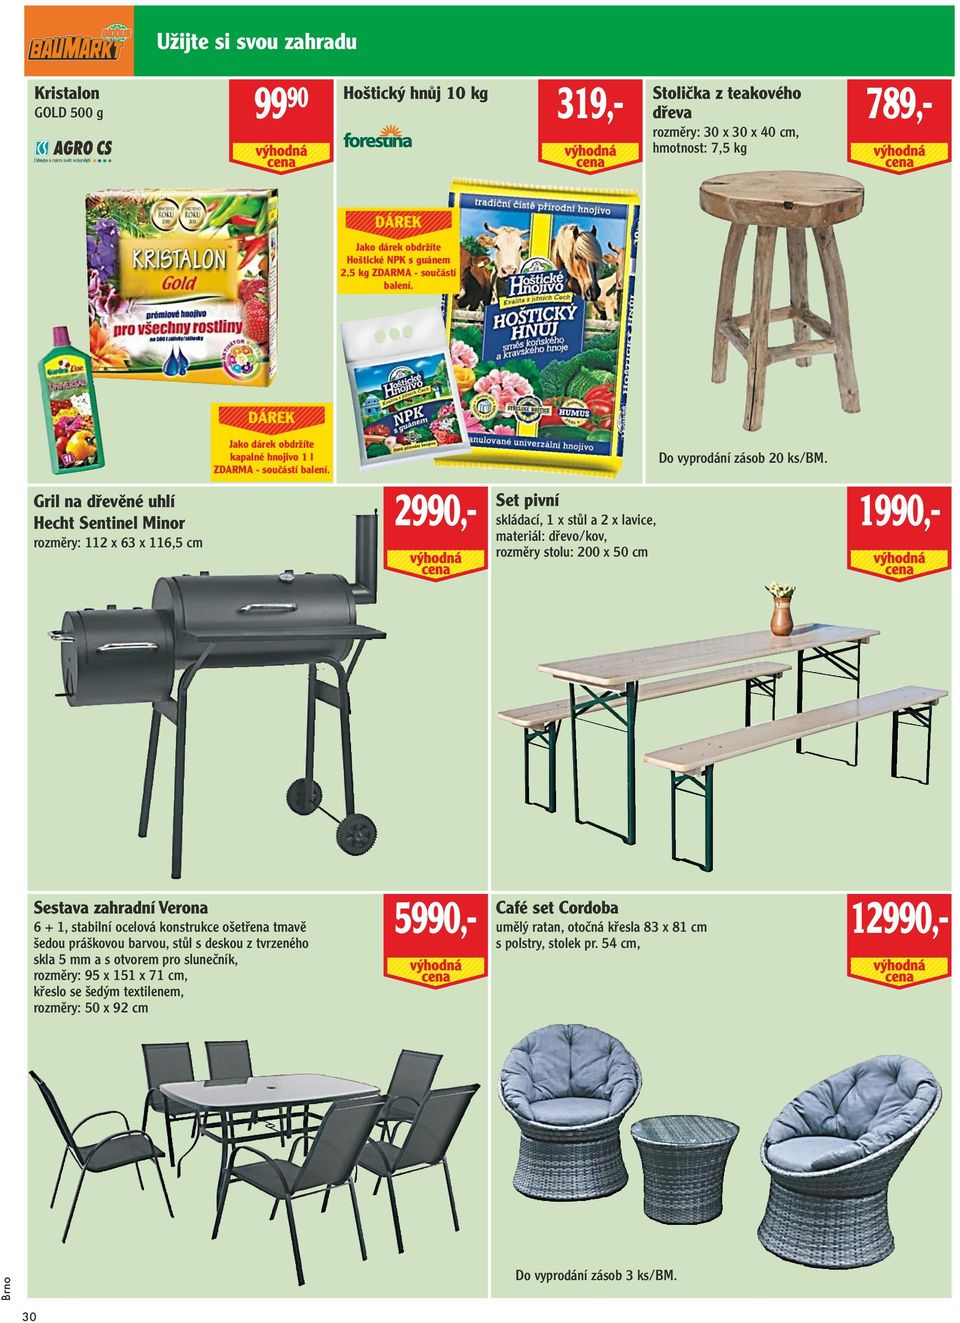 1990,- 2990,- Set pivní skládací, 1 x stůl a 2 x lavice, materiál: dřevo/kov, rozměry stolu: 200 x 50 cm Do vyprodání zásob 20 ks/bm.